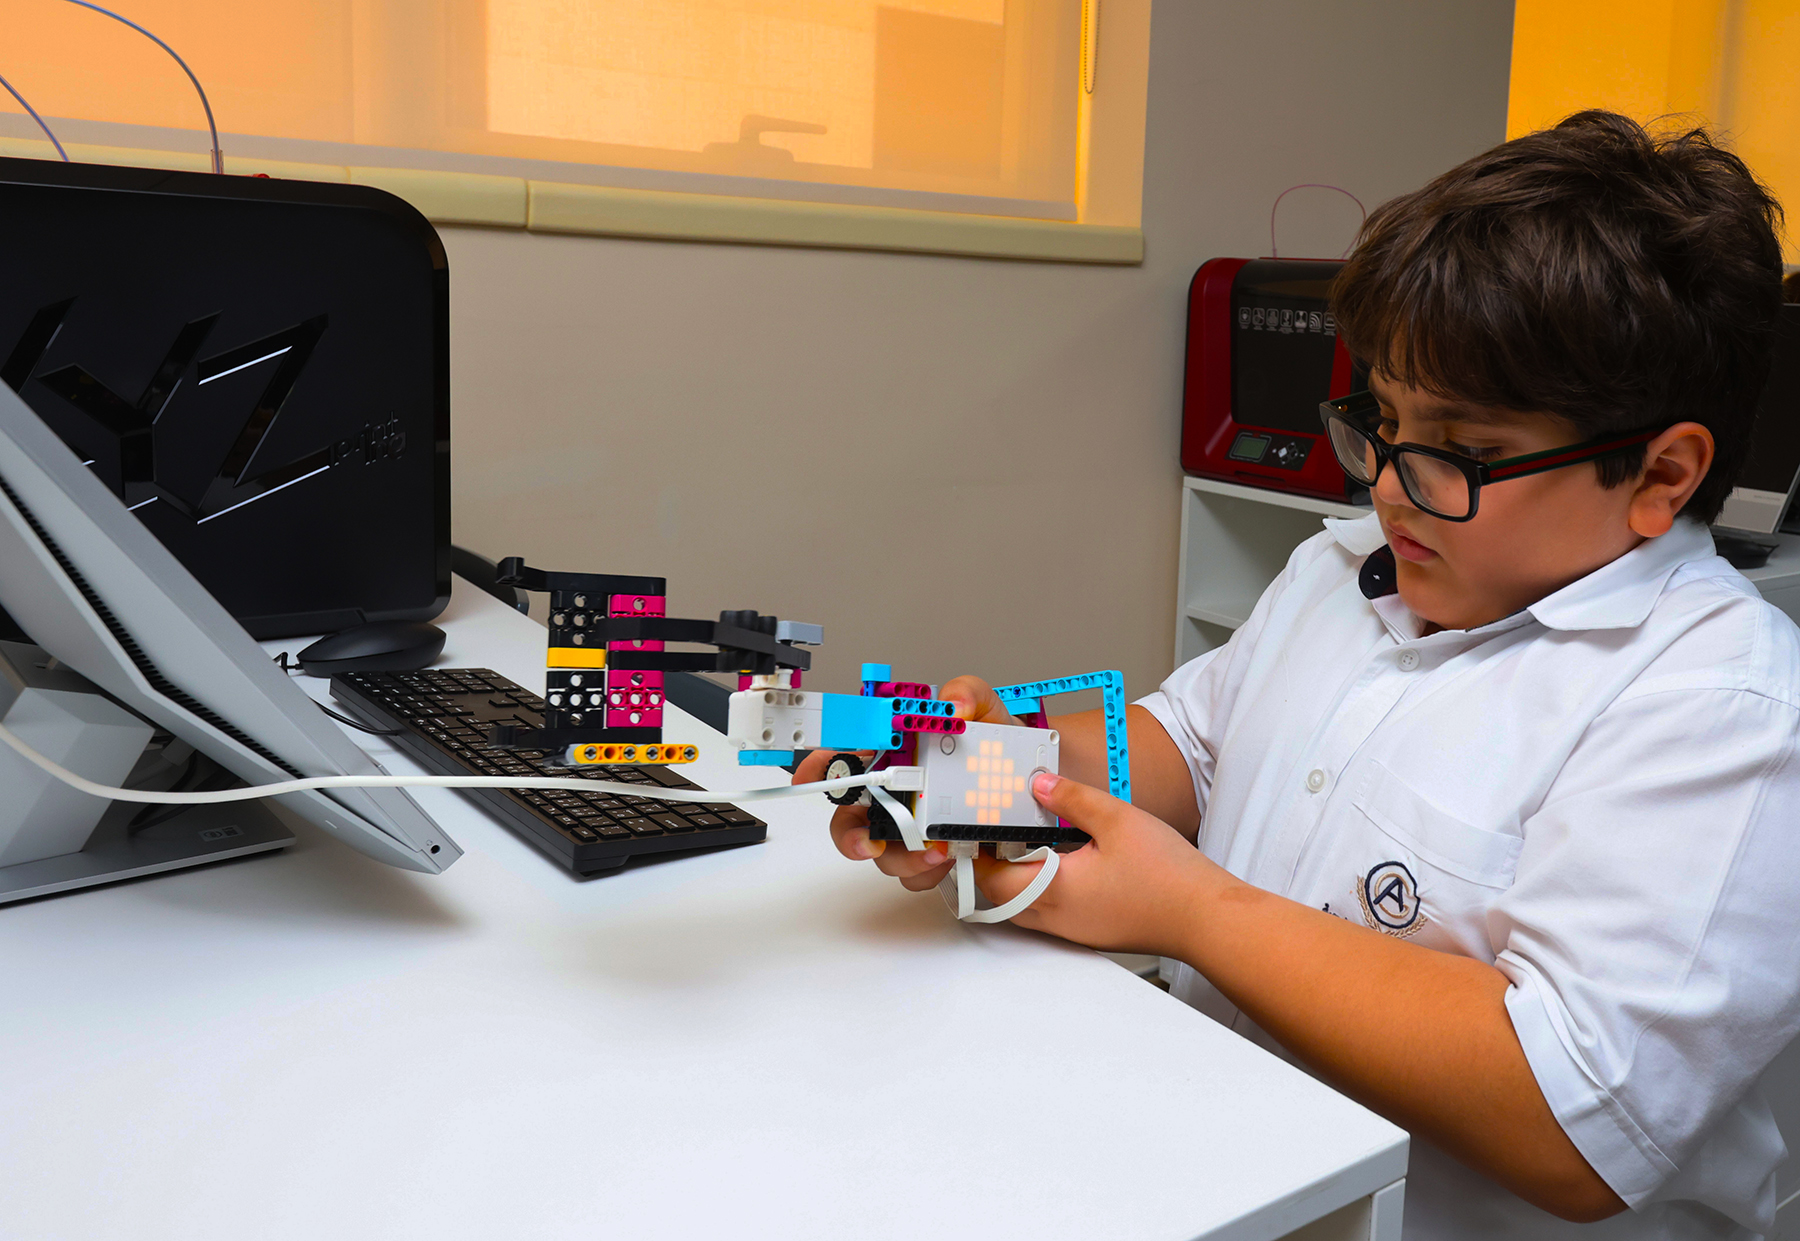 مدرسة الخليج الأمريكية بالشارقة - صورة لطلاب يشاركون في العلوم والتكنولوجيا والهندسة والرياضيات مع LEGO Mindstorms